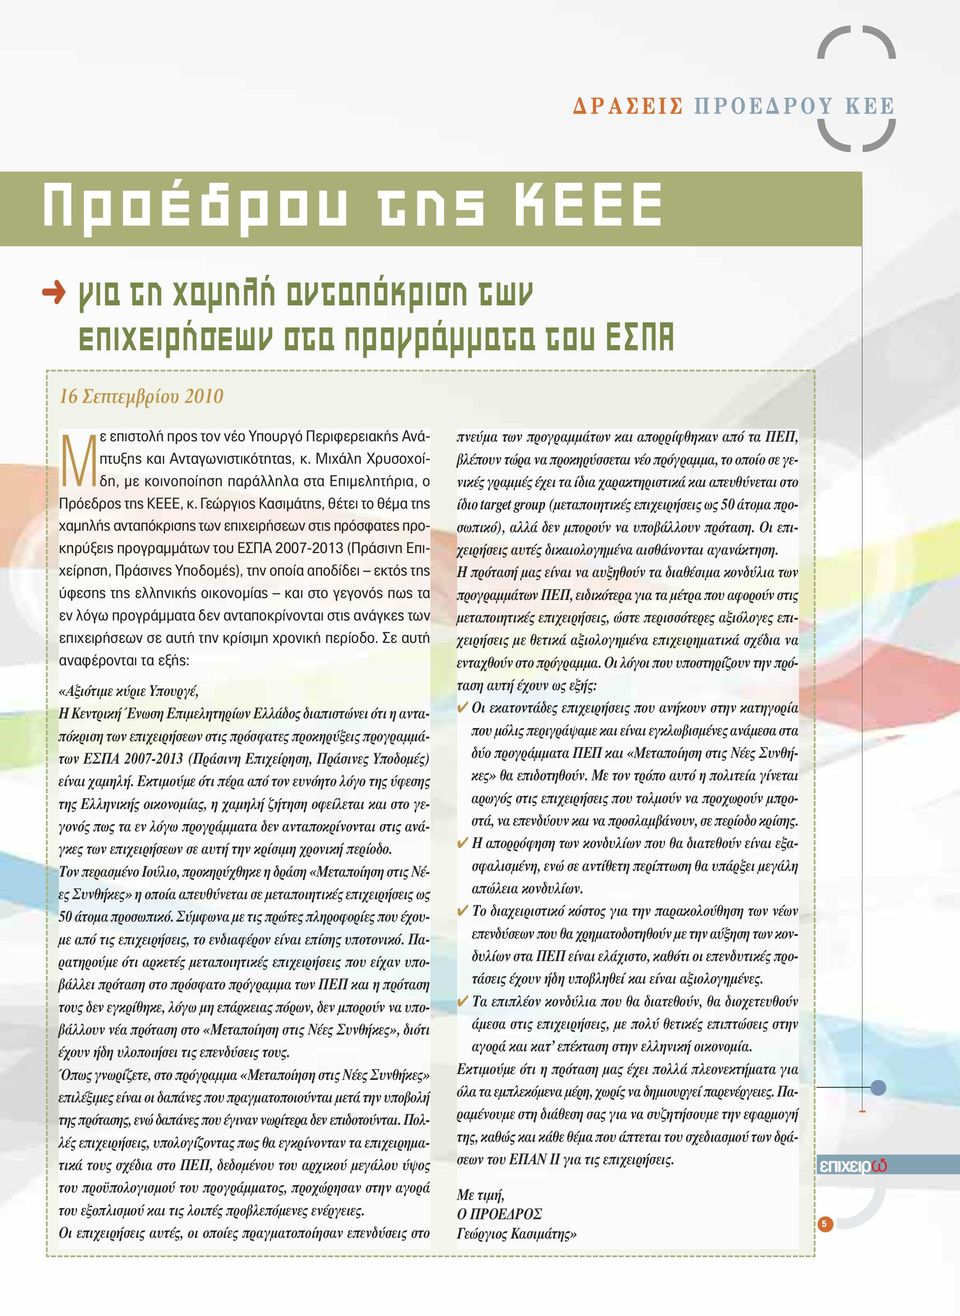 Γεώργιος Κασιμάτης, θέτει το θέμα της χαμηλής ανταπόκρισης των επιχειρήσεων στις πρόσφατες προκηρύξεις προγραμμάτων του ΕΣΠΑ 2007-2013 (Πράσινη Επιχείρηση, Πράσινες Υποδομές), την οποία αποδίδει